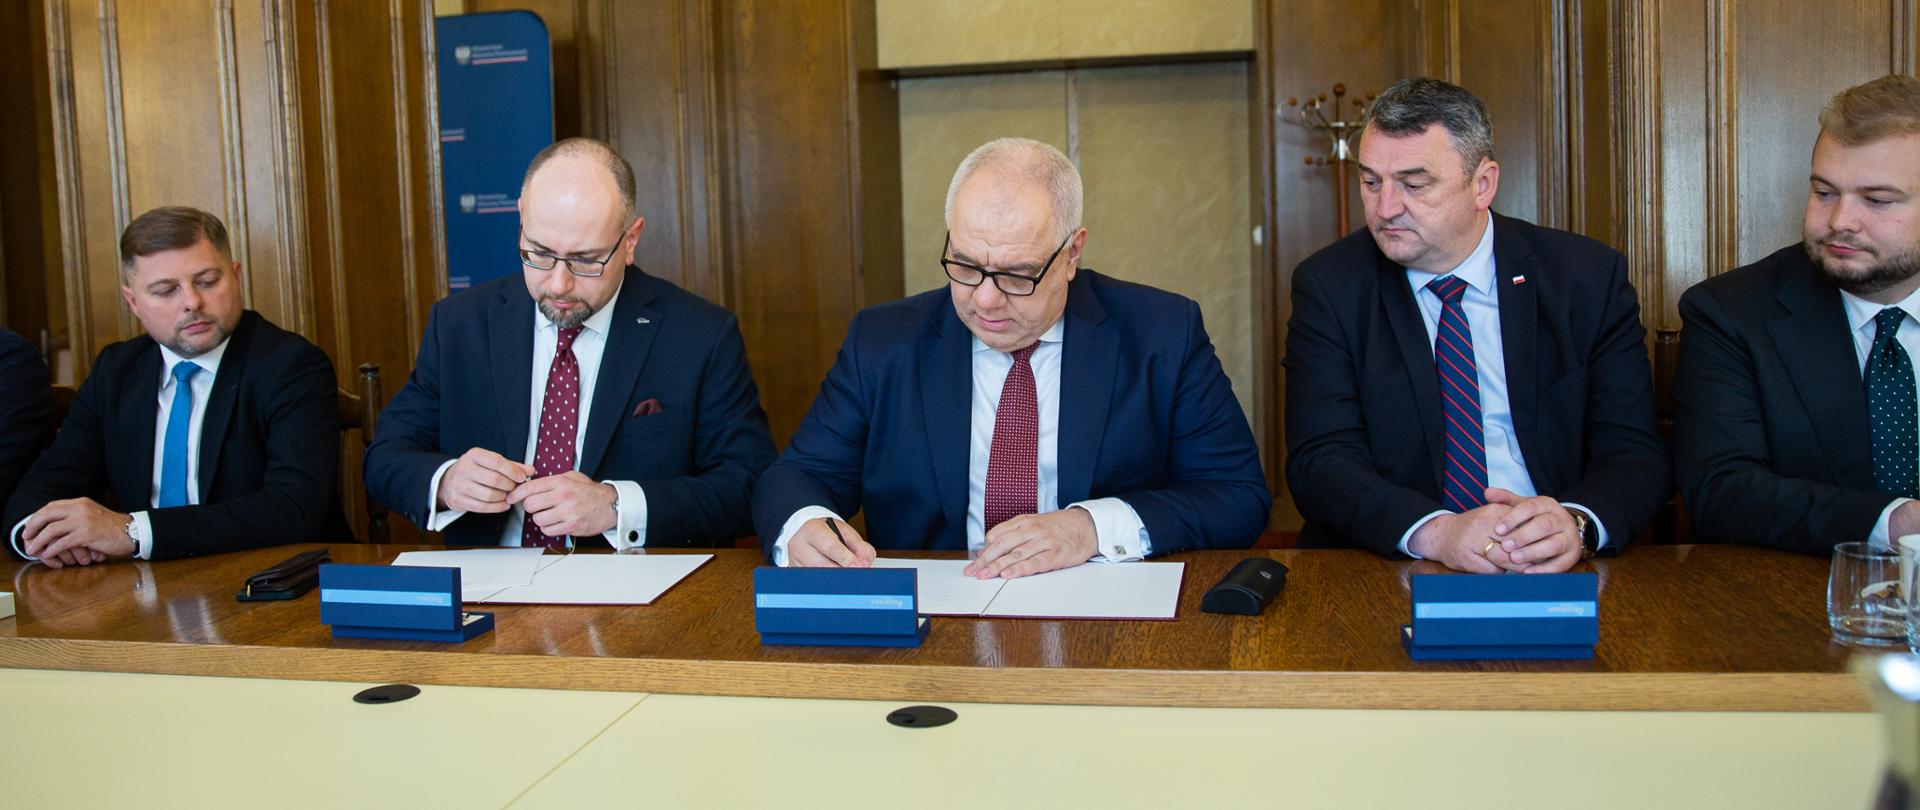 Podpisanie porozumienia w sprawie LW Bogdanka